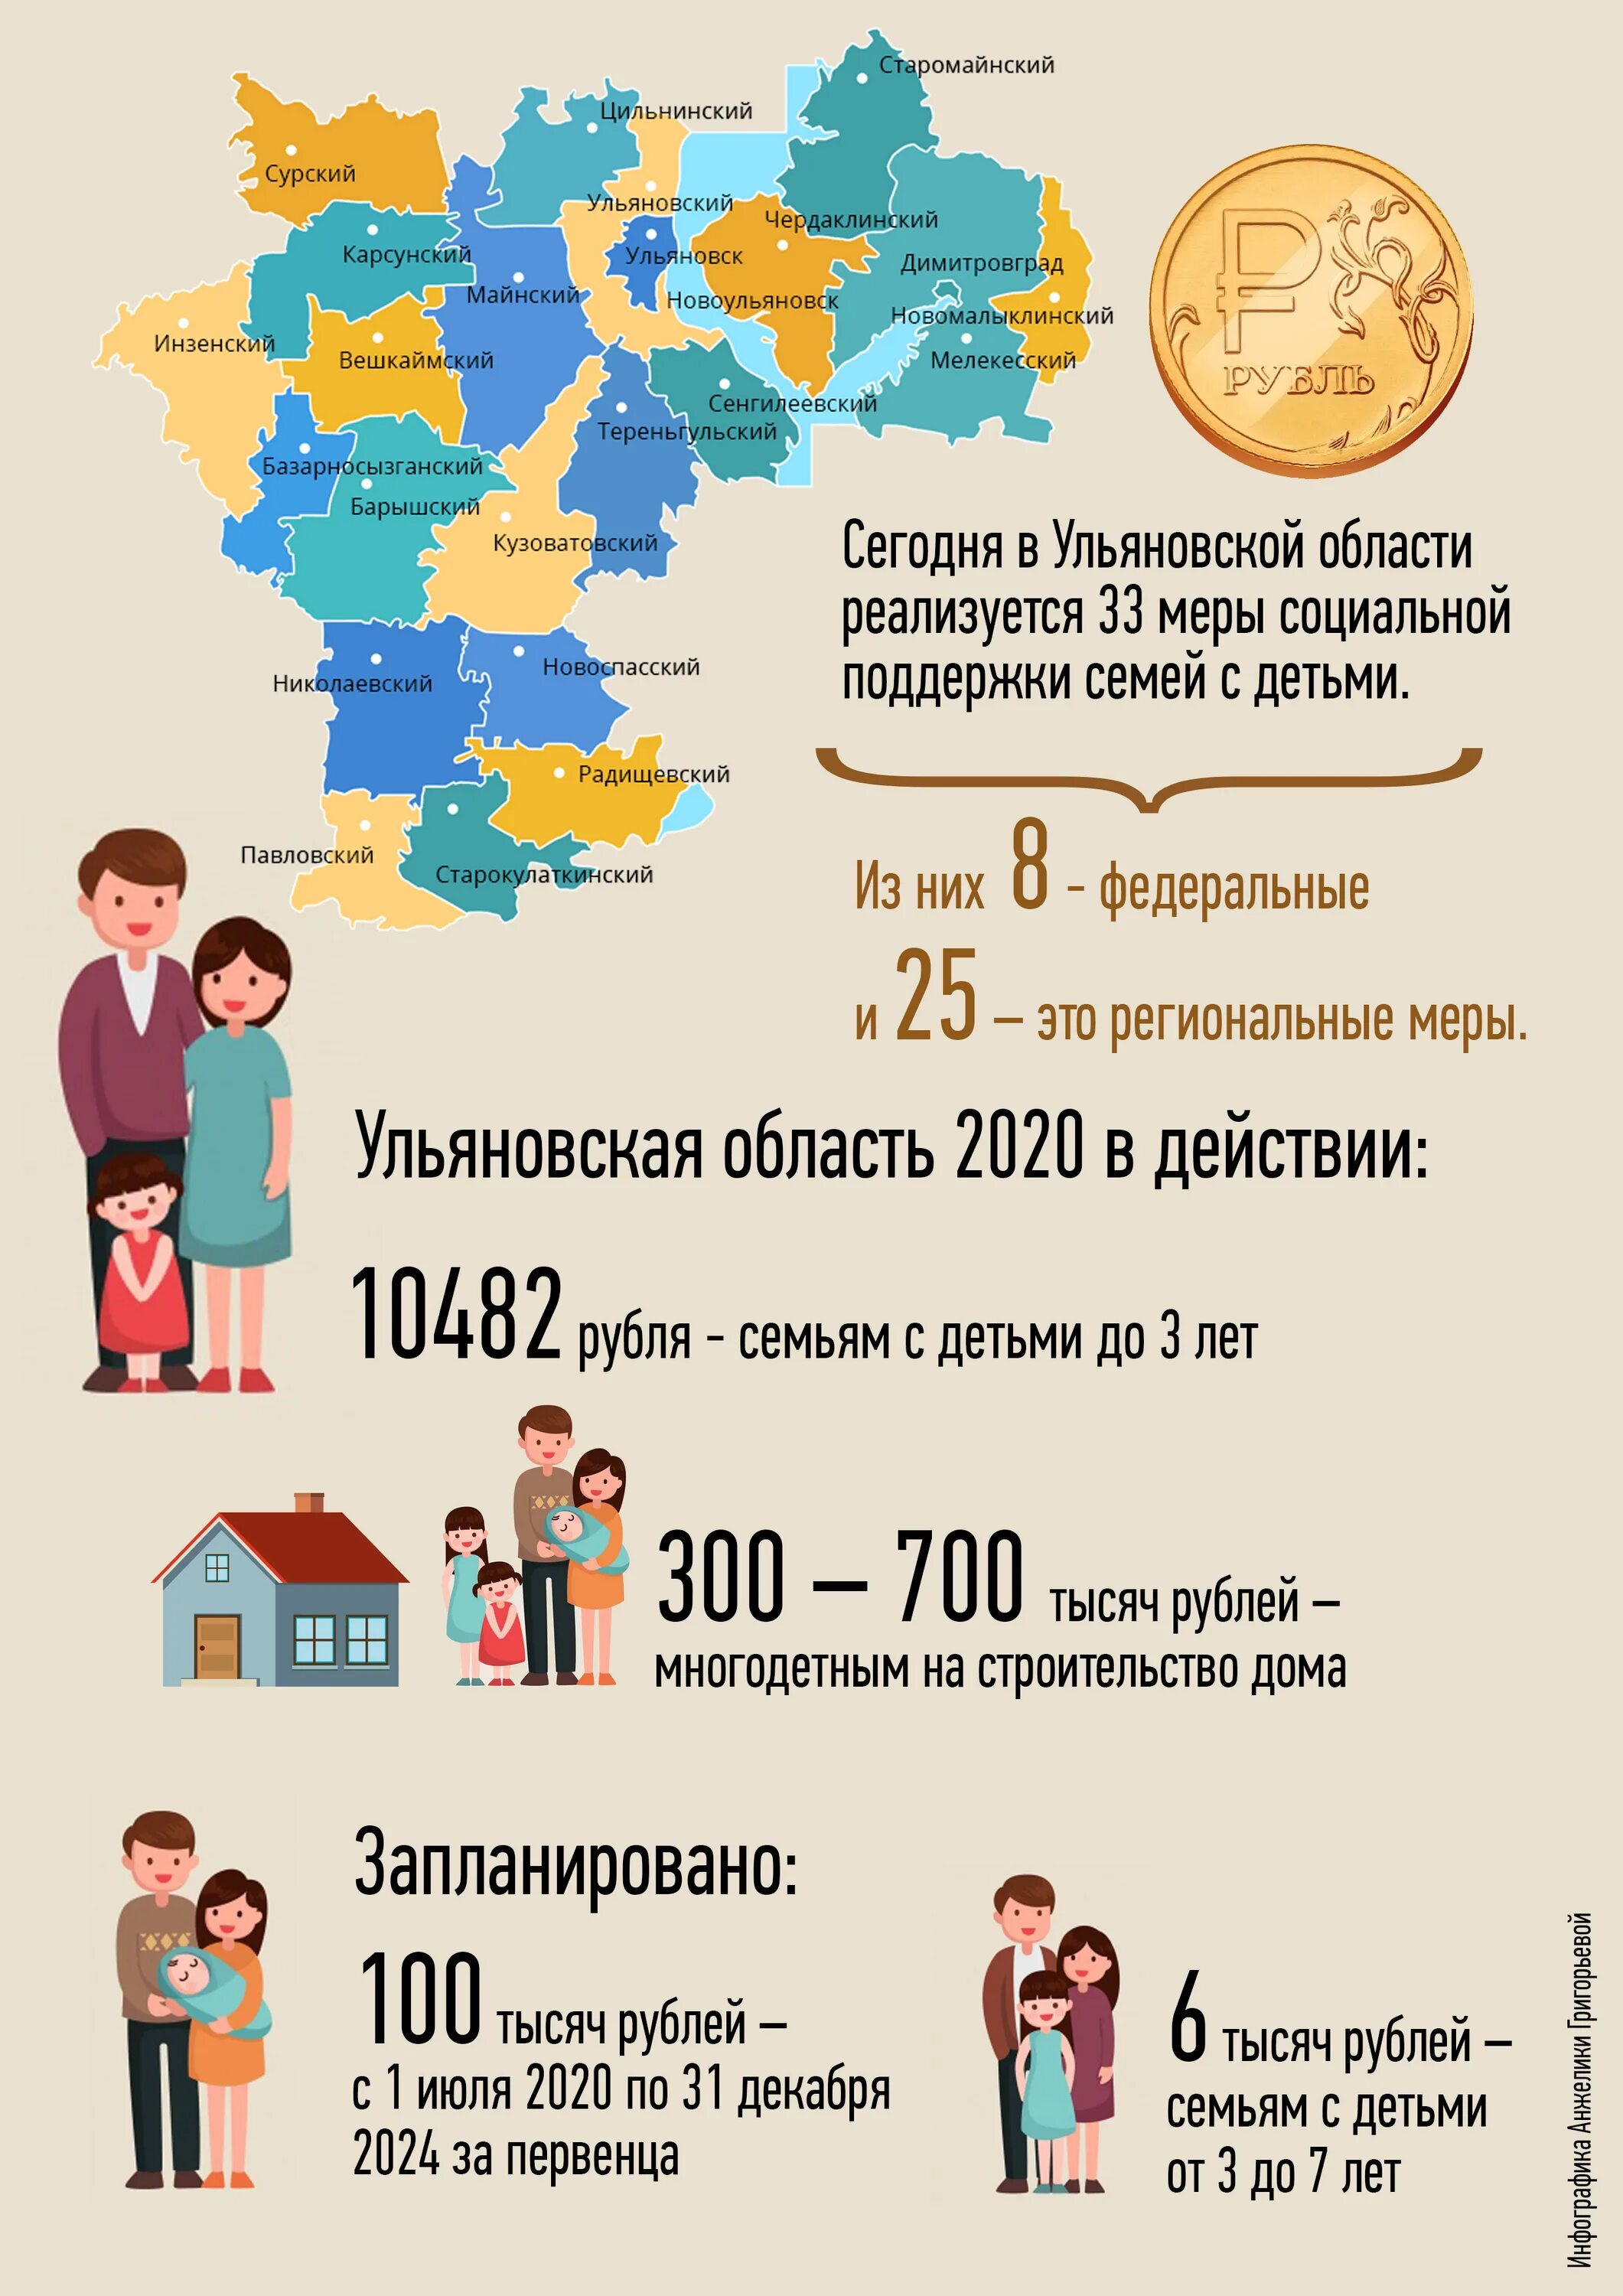 Пособия многодетным. Выплаты на детей многодетным семьям. Детское пособие. Выплаты в 2022 году на детей в Ульяновской области.